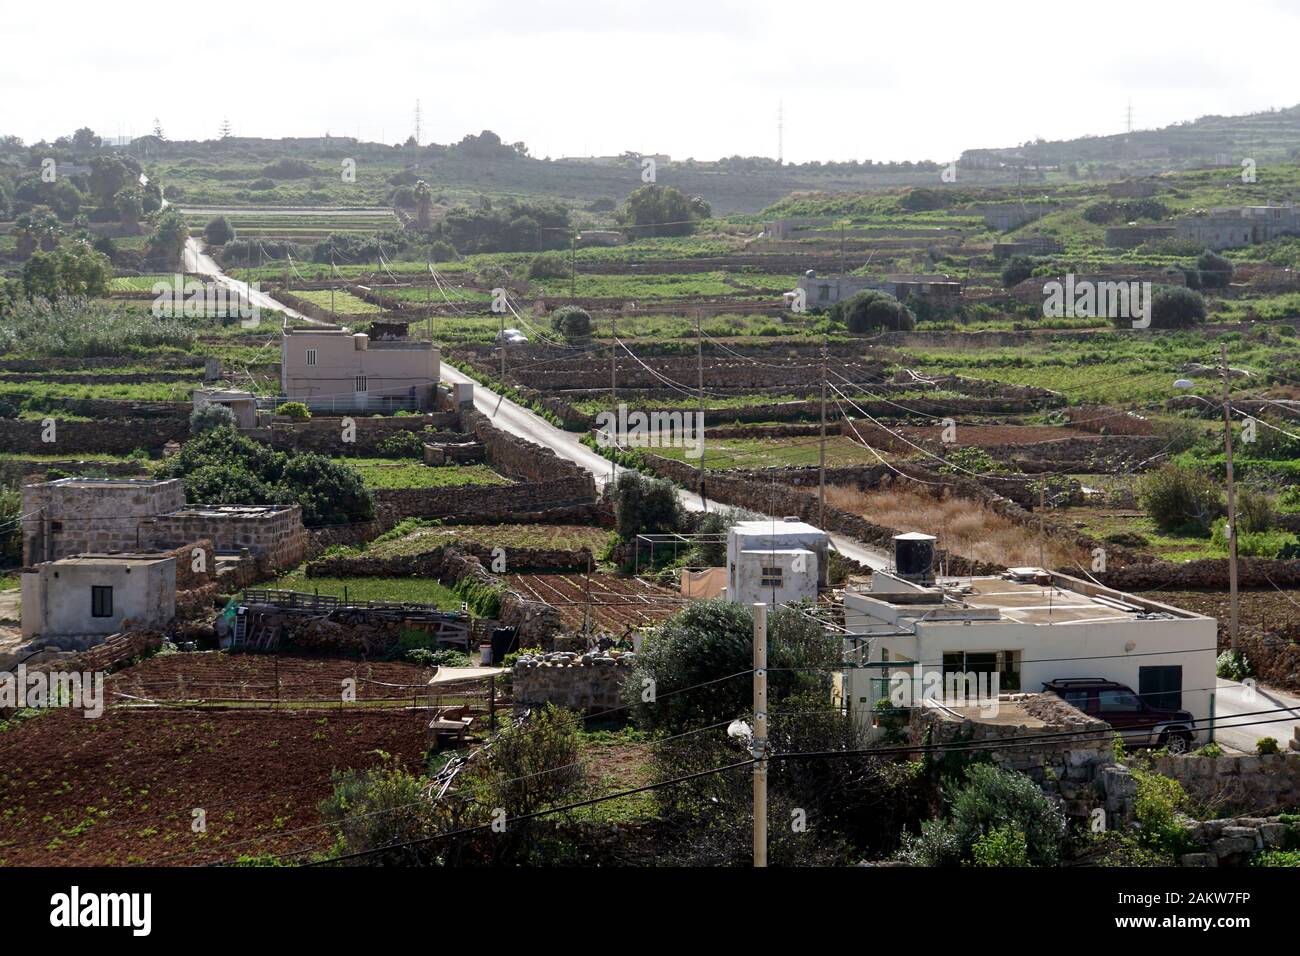 Typische Agrarlandschaft mit Kleinfeldwirtschaft zwischen Kalkstein- Trockenmauern auern auf Malta , Mellieha, Malta Foto Stock